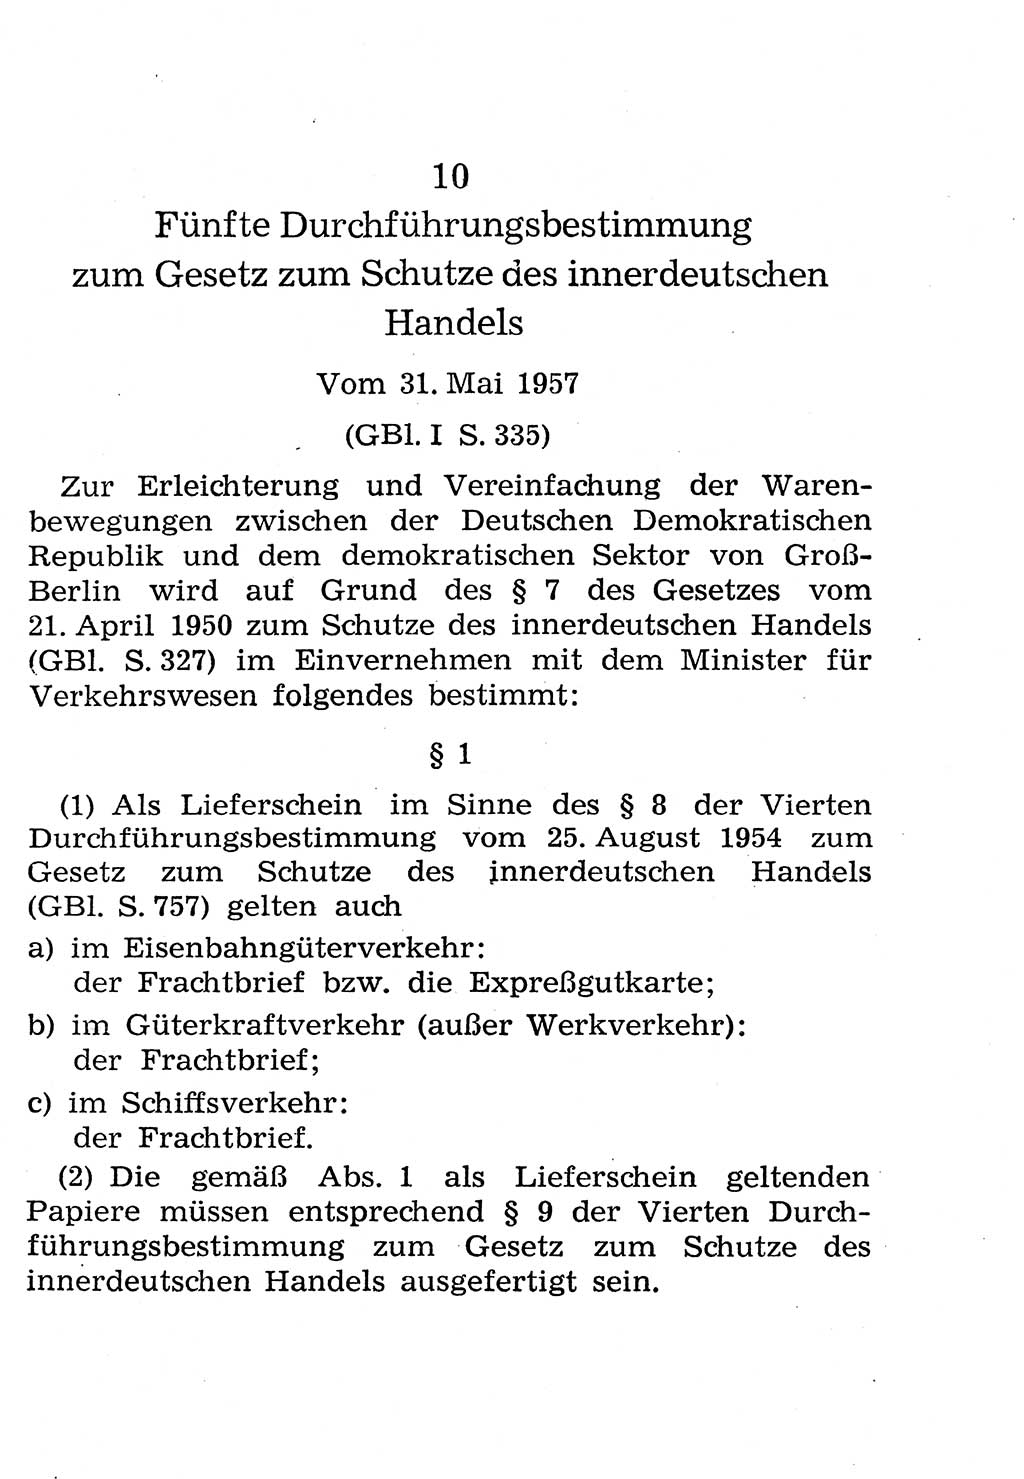 Strafgesetzbuch (StGB) und andere Strafgesetze [Deutsche Demokratische Republik (DDR)] 1958, Seite 277 (StGB Strafges. DDR 1958, S. 277)